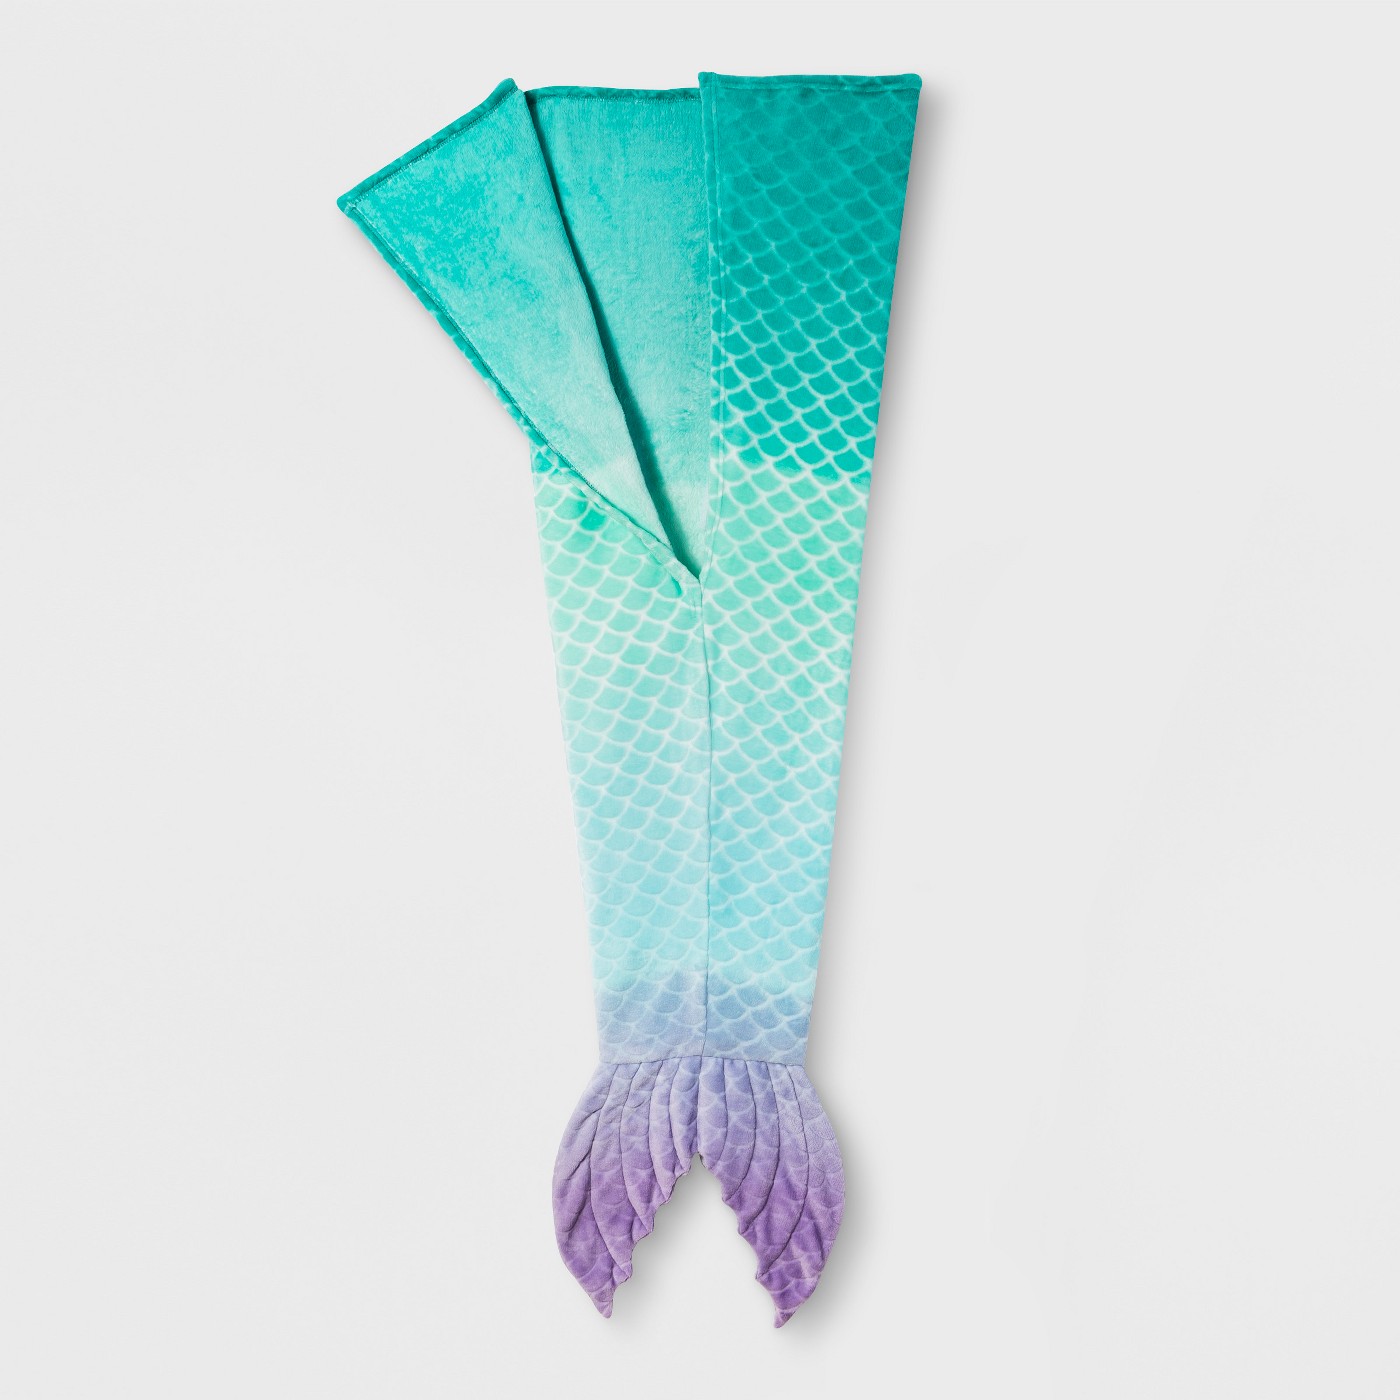 Mermaid Tail Blanket - Pillowfortâ¢ - image 1 of 1